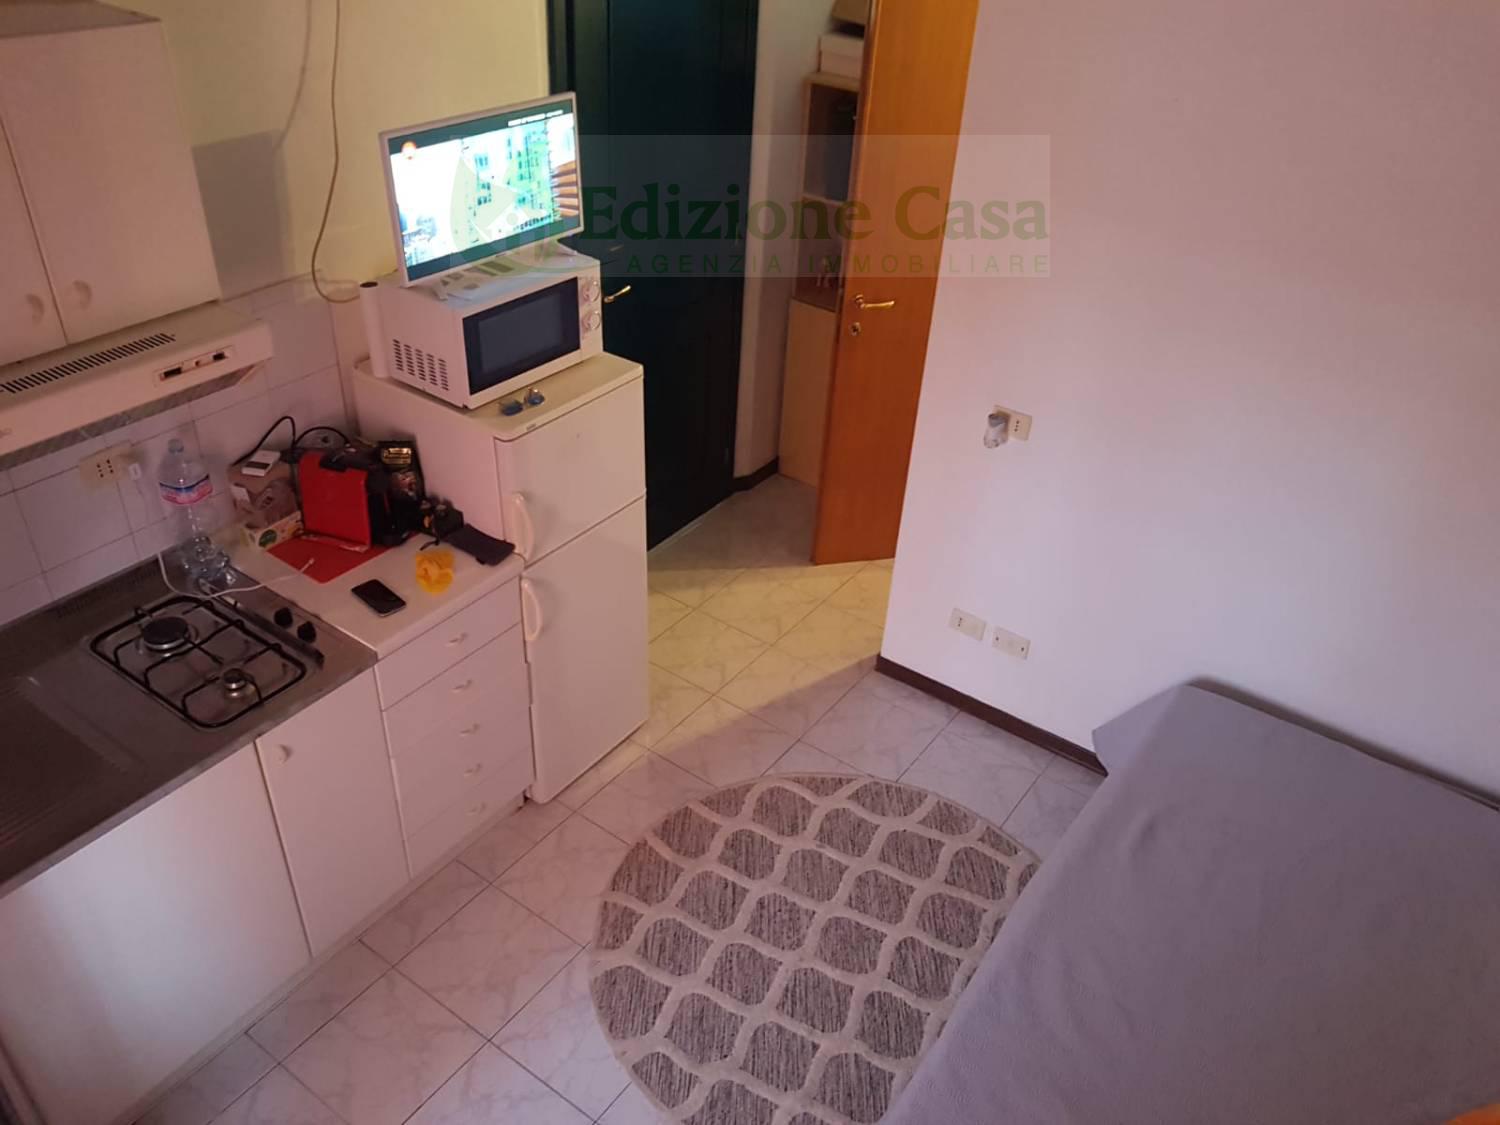 Appartamento in affitto a Parma, 1 locali, prezzo € 750 | PortaleAgenzieImmobiliari.it